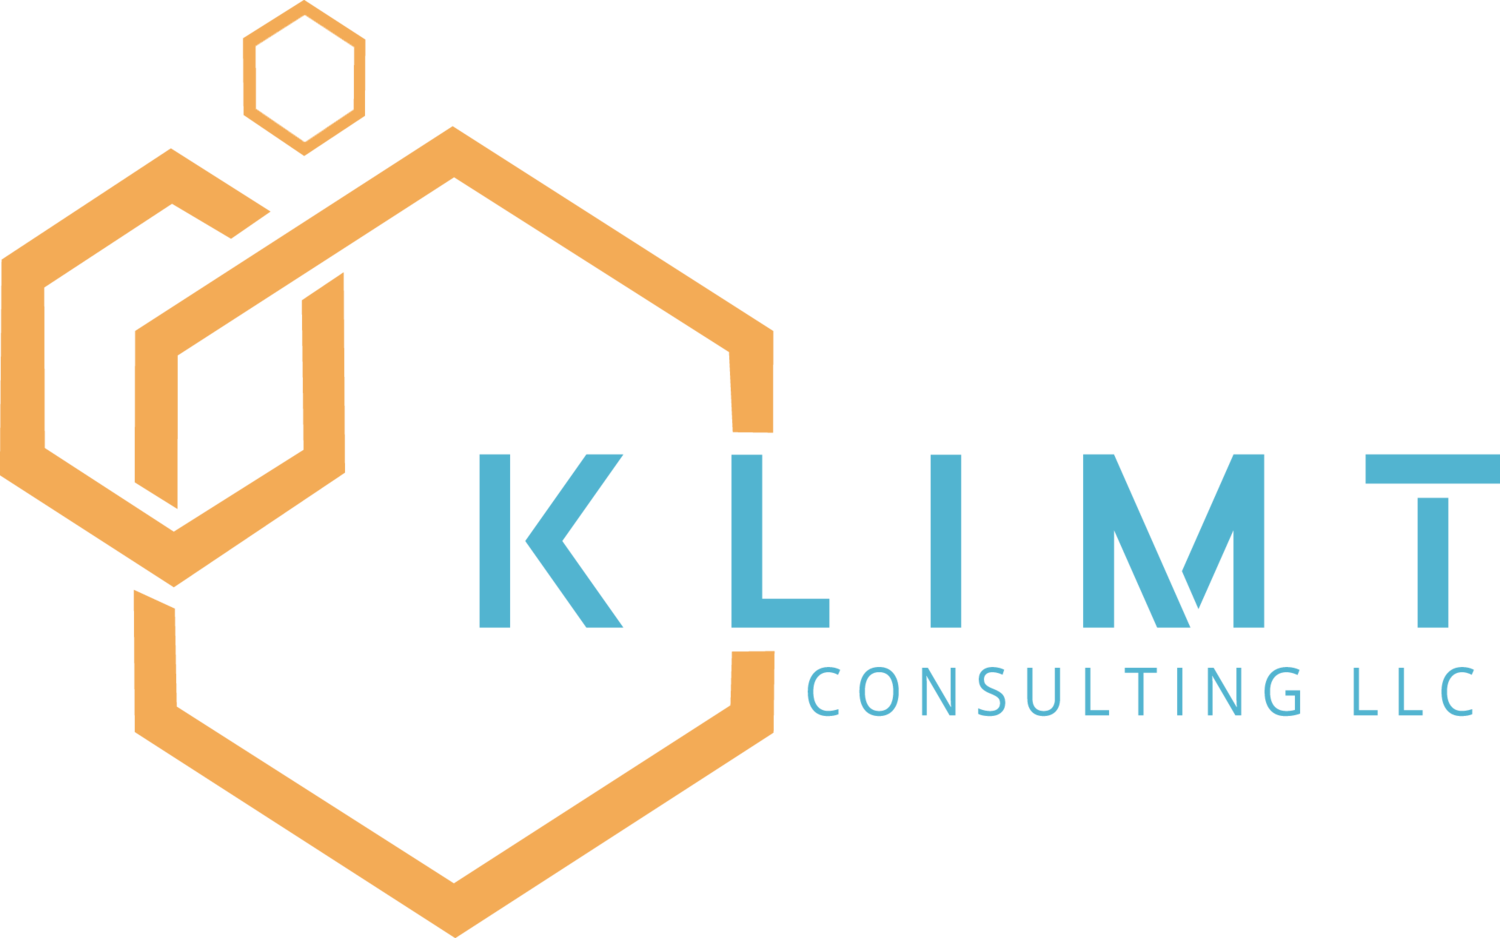 KLIMT CONSULTING LLC